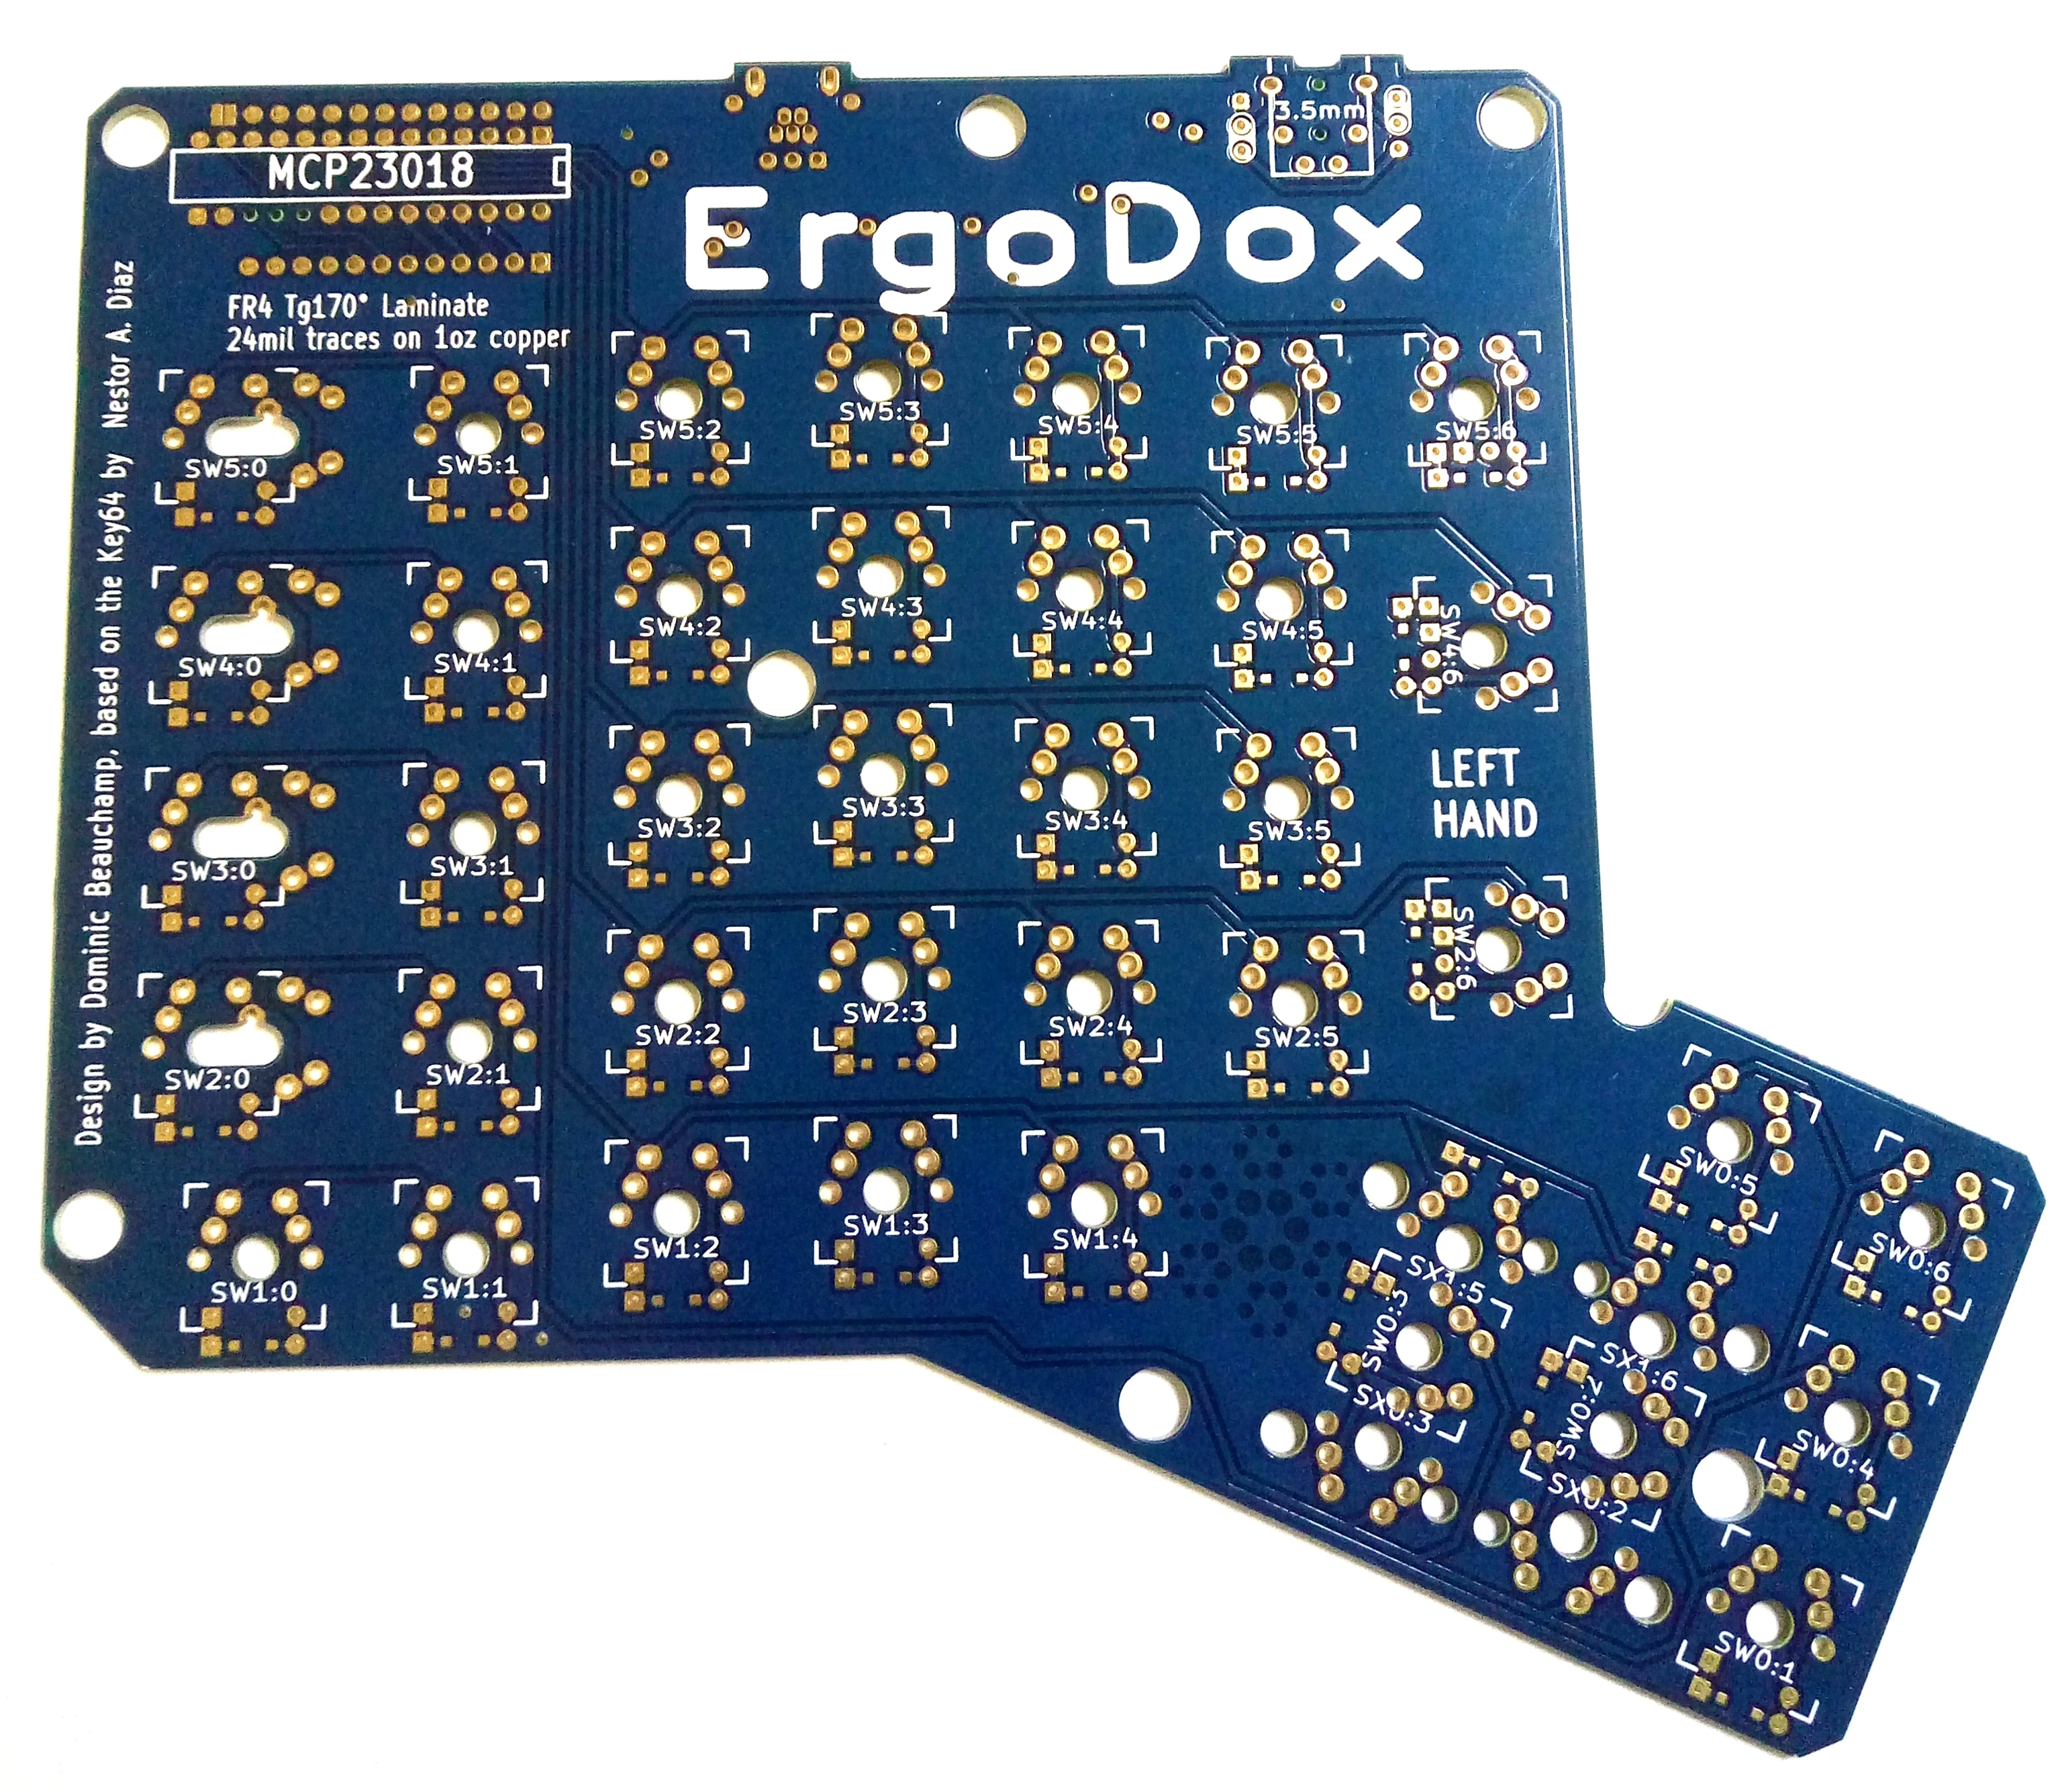 
fr4 high tg 170 ErgoDox keyboard pcb electronic circuit board  (60605142324)